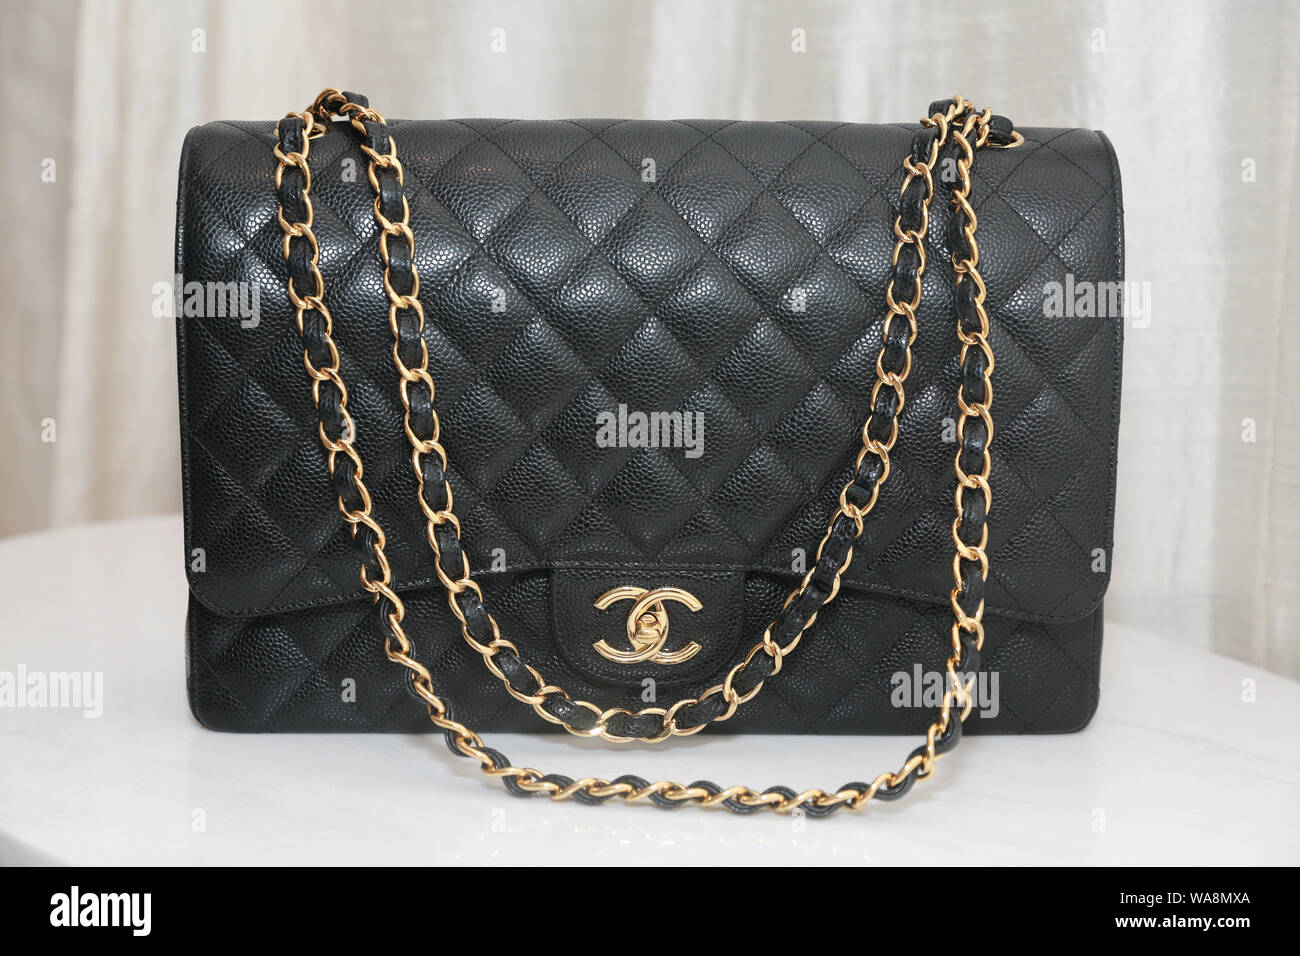 Princeton, New Jersey, USA, 18 août 2019 : Photo de marque sac à main Chanel noir Editorial sur fond blanc. Banque D'Images